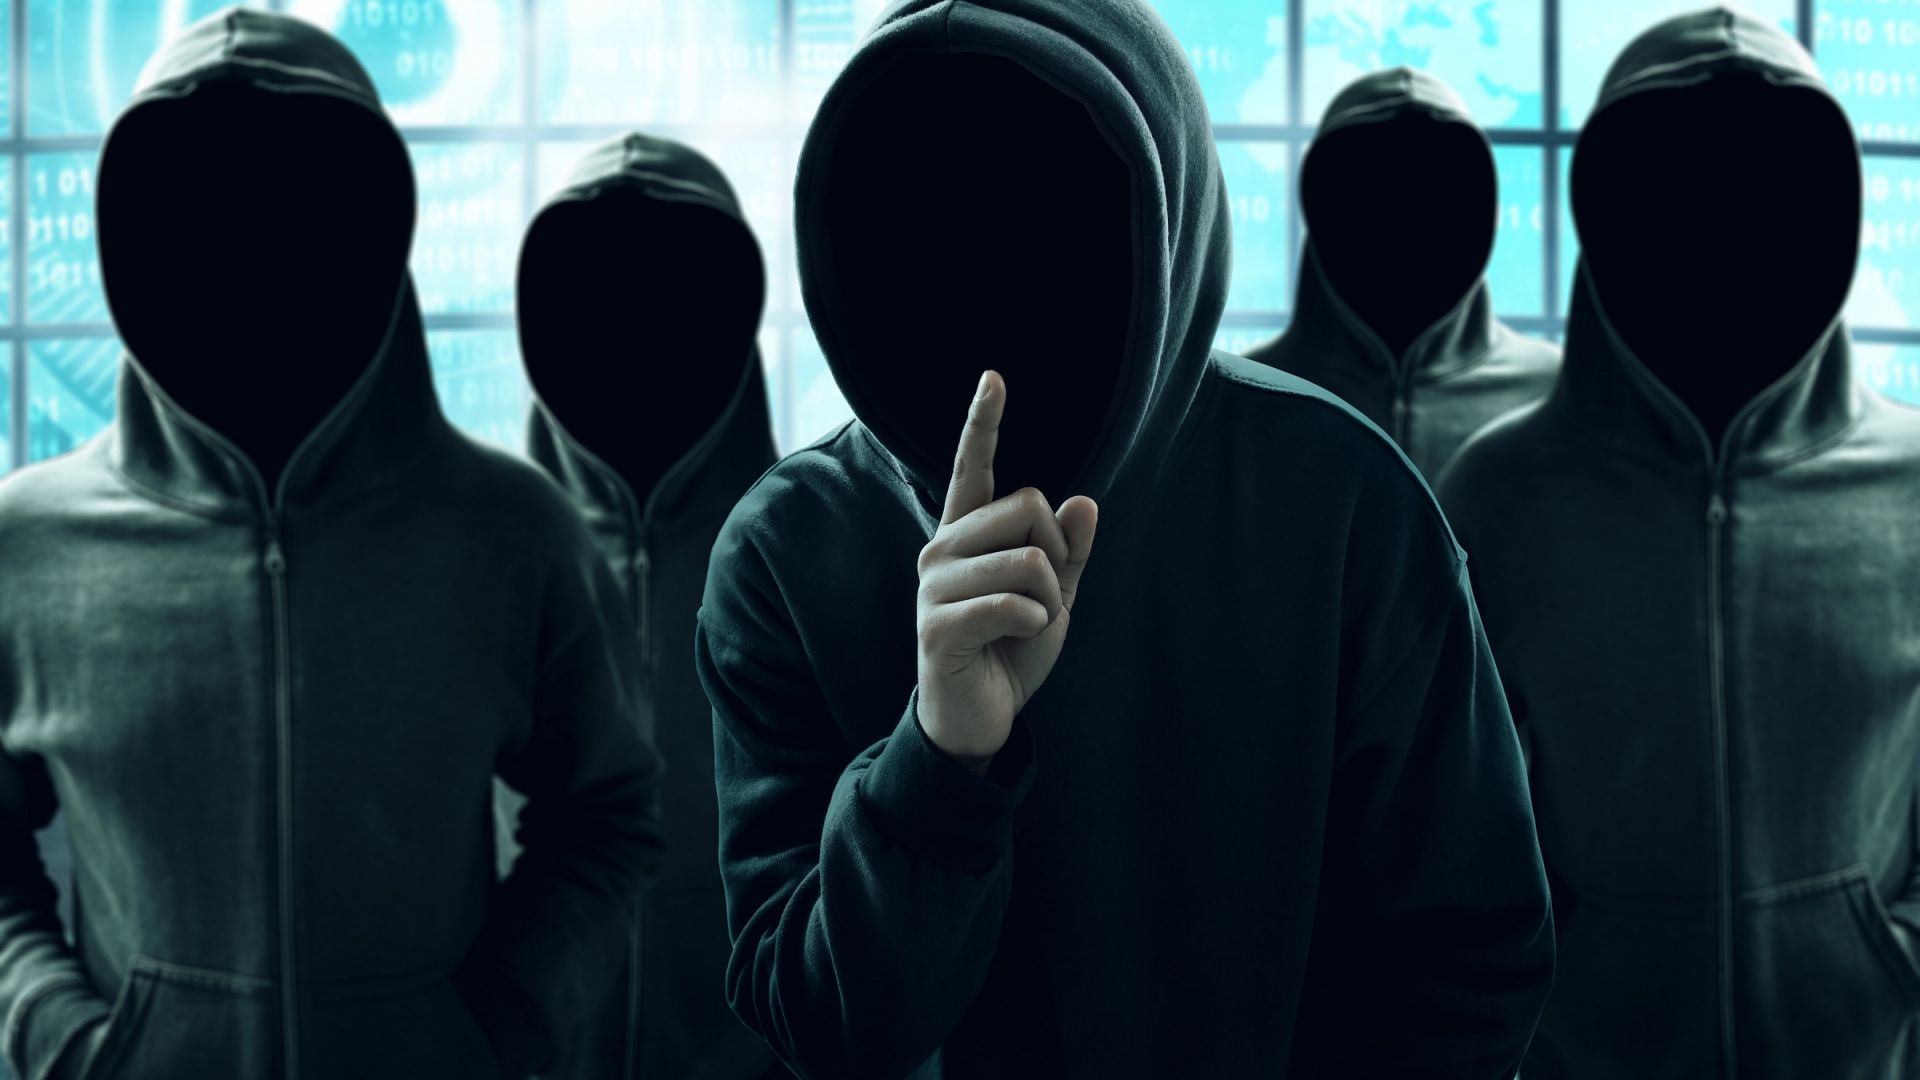 Илън Мъск се пошегува с хакерската група Anonymous